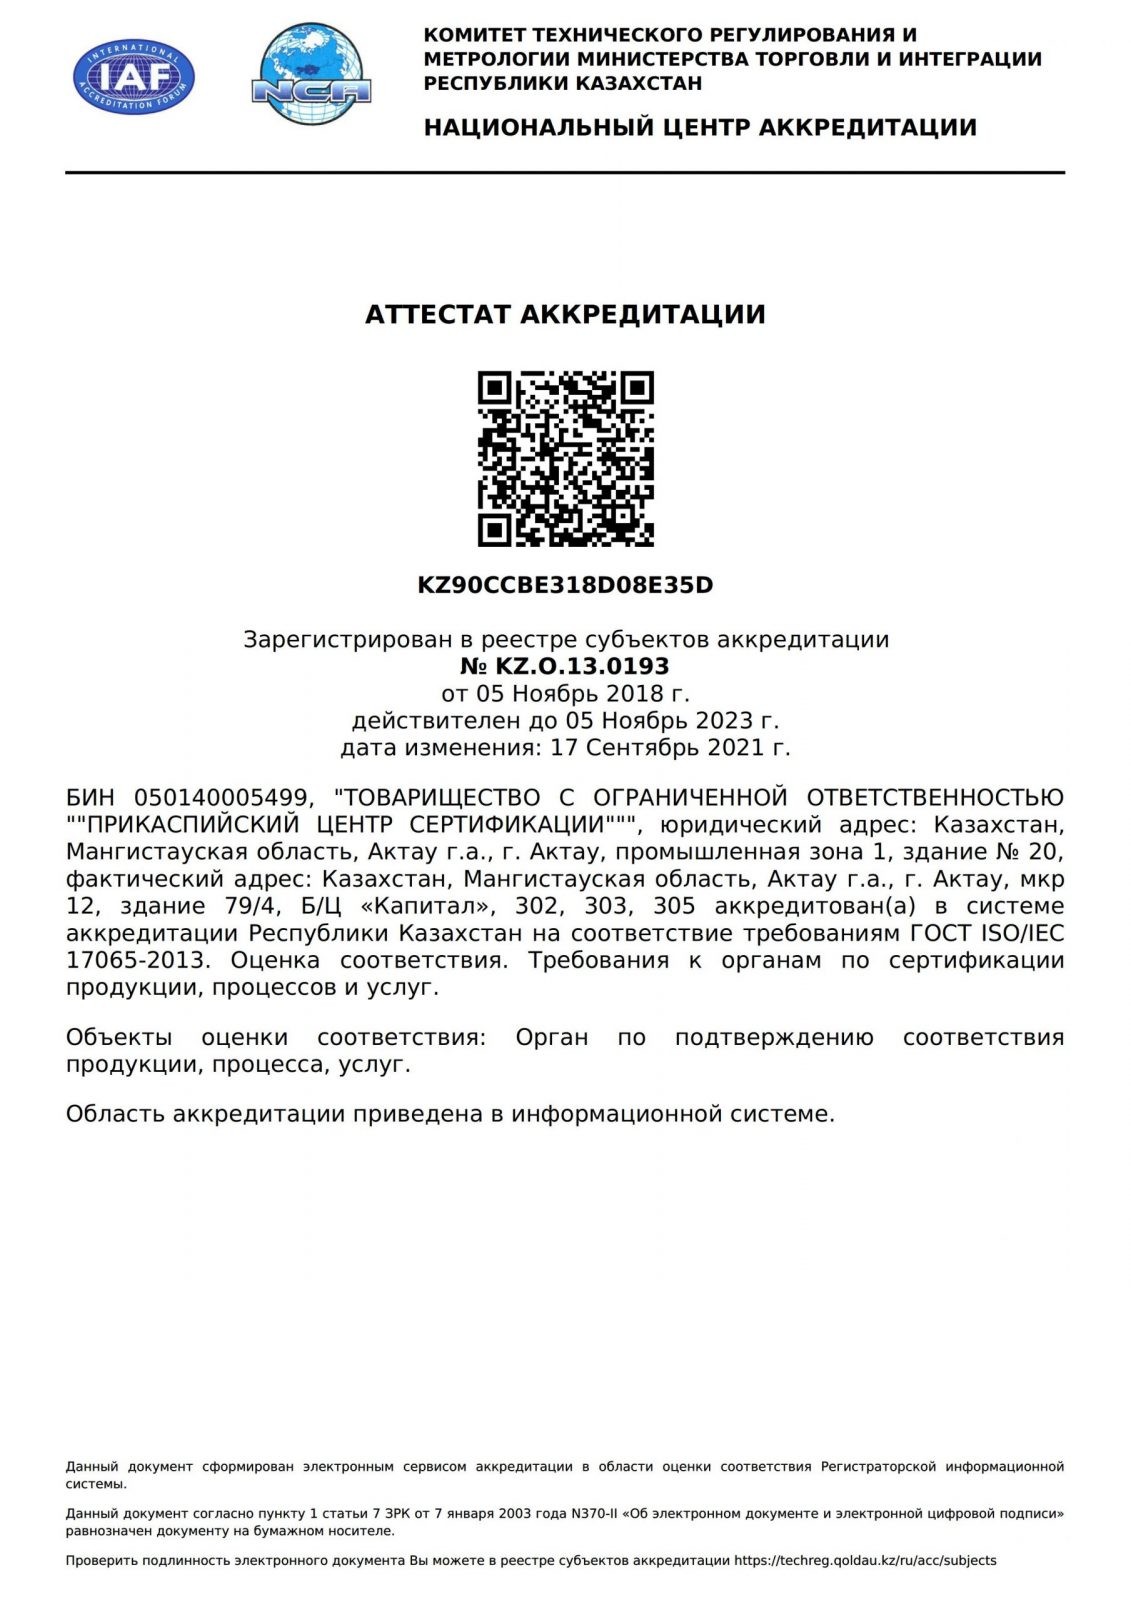 Аттестат ОПС П электронный 17065 с изменениями 17.09.21г.